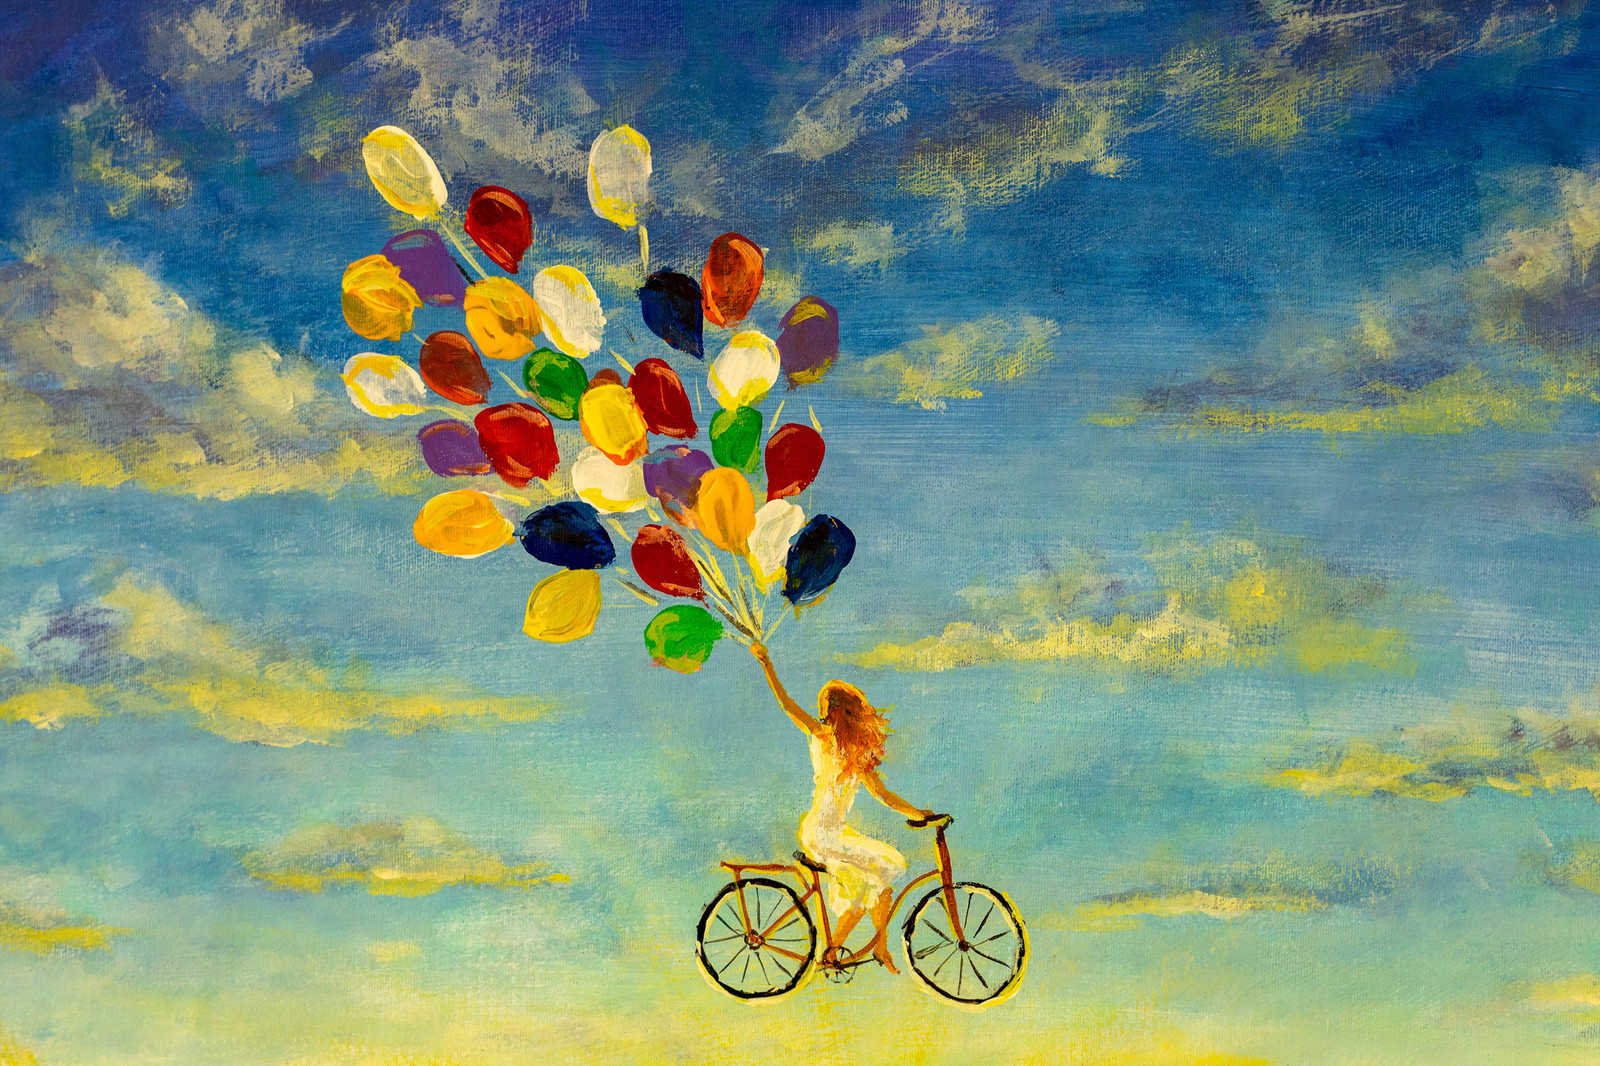             Quadro su tela con Donna in bicicletta nel cielo Pittura - 0,90 m x 0,60 m
        